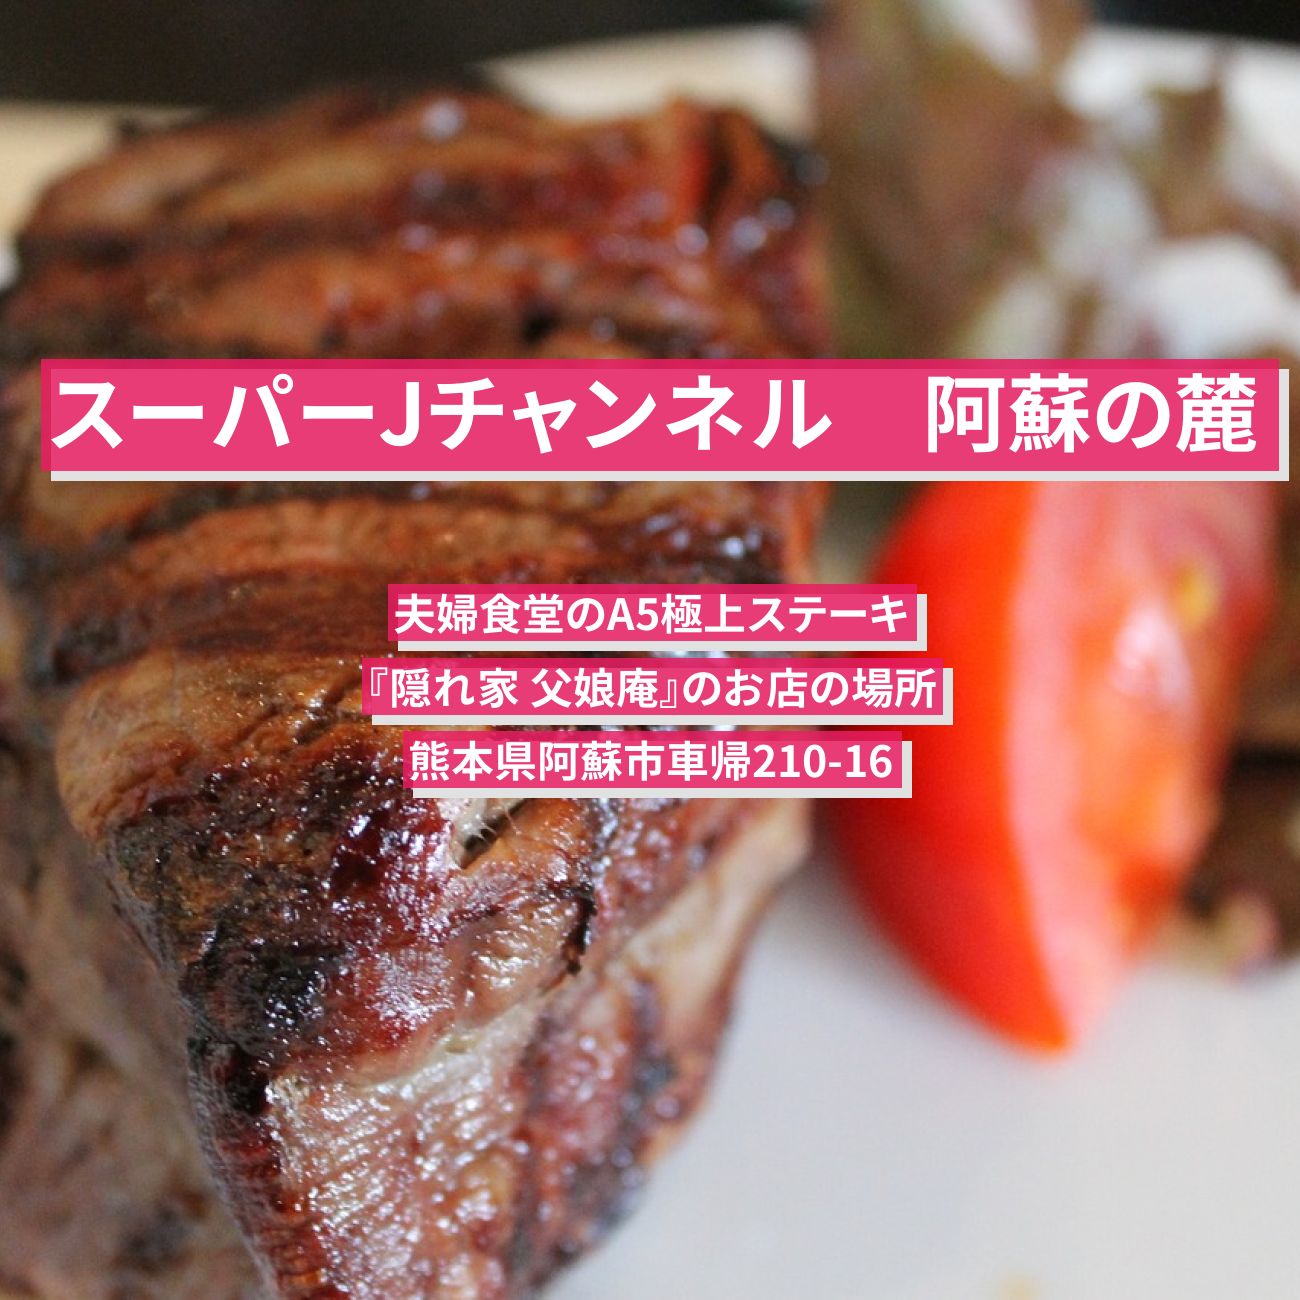 【スーパーJチャンネル】阿蘇の麓の夫婦食堂のA5極上ステーキ『隠れ家 父娘庵』のお店の場所